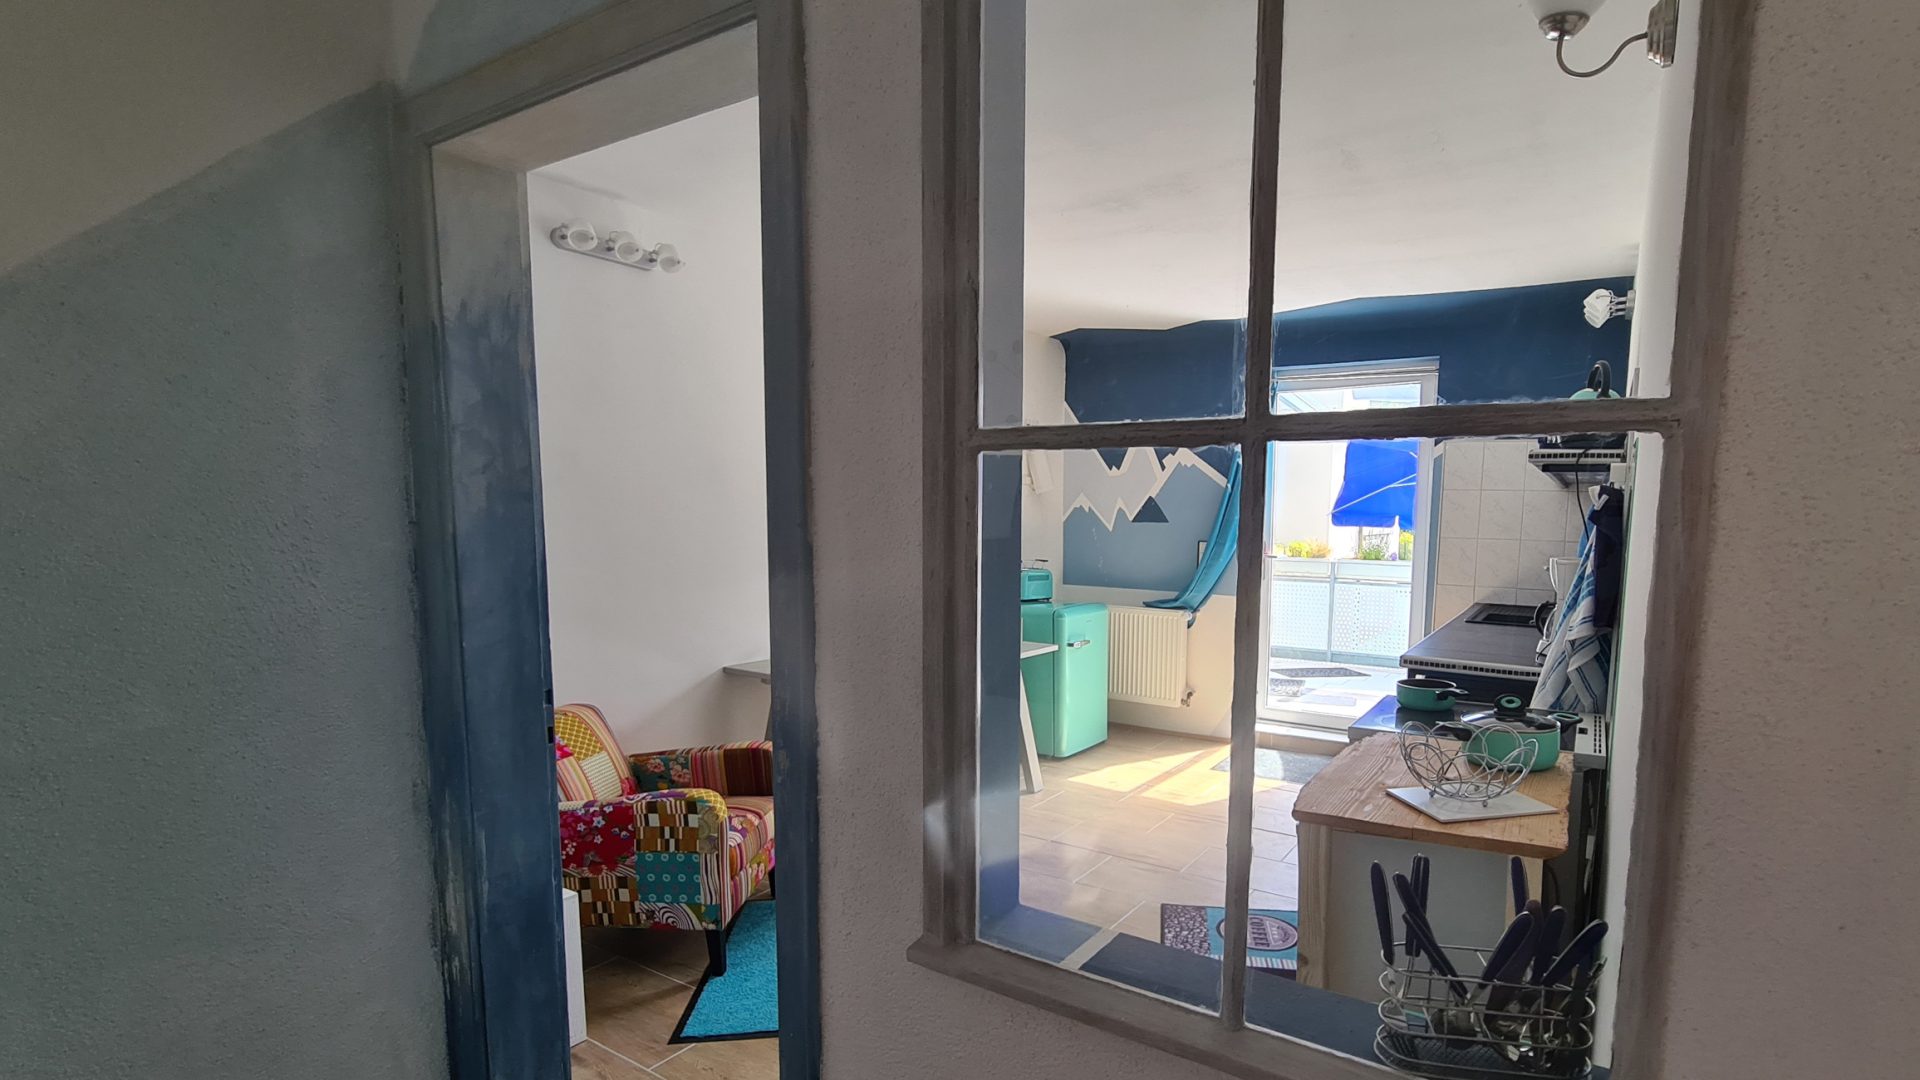 Blick durch ein altes innen eingebautes Sprossenfenster in eine sonnige Wohnküche durch die Glastür sieht man bis zur Terrasse. Einrichtung ist türkis-blau-petrol mit einem bunten Sessel.